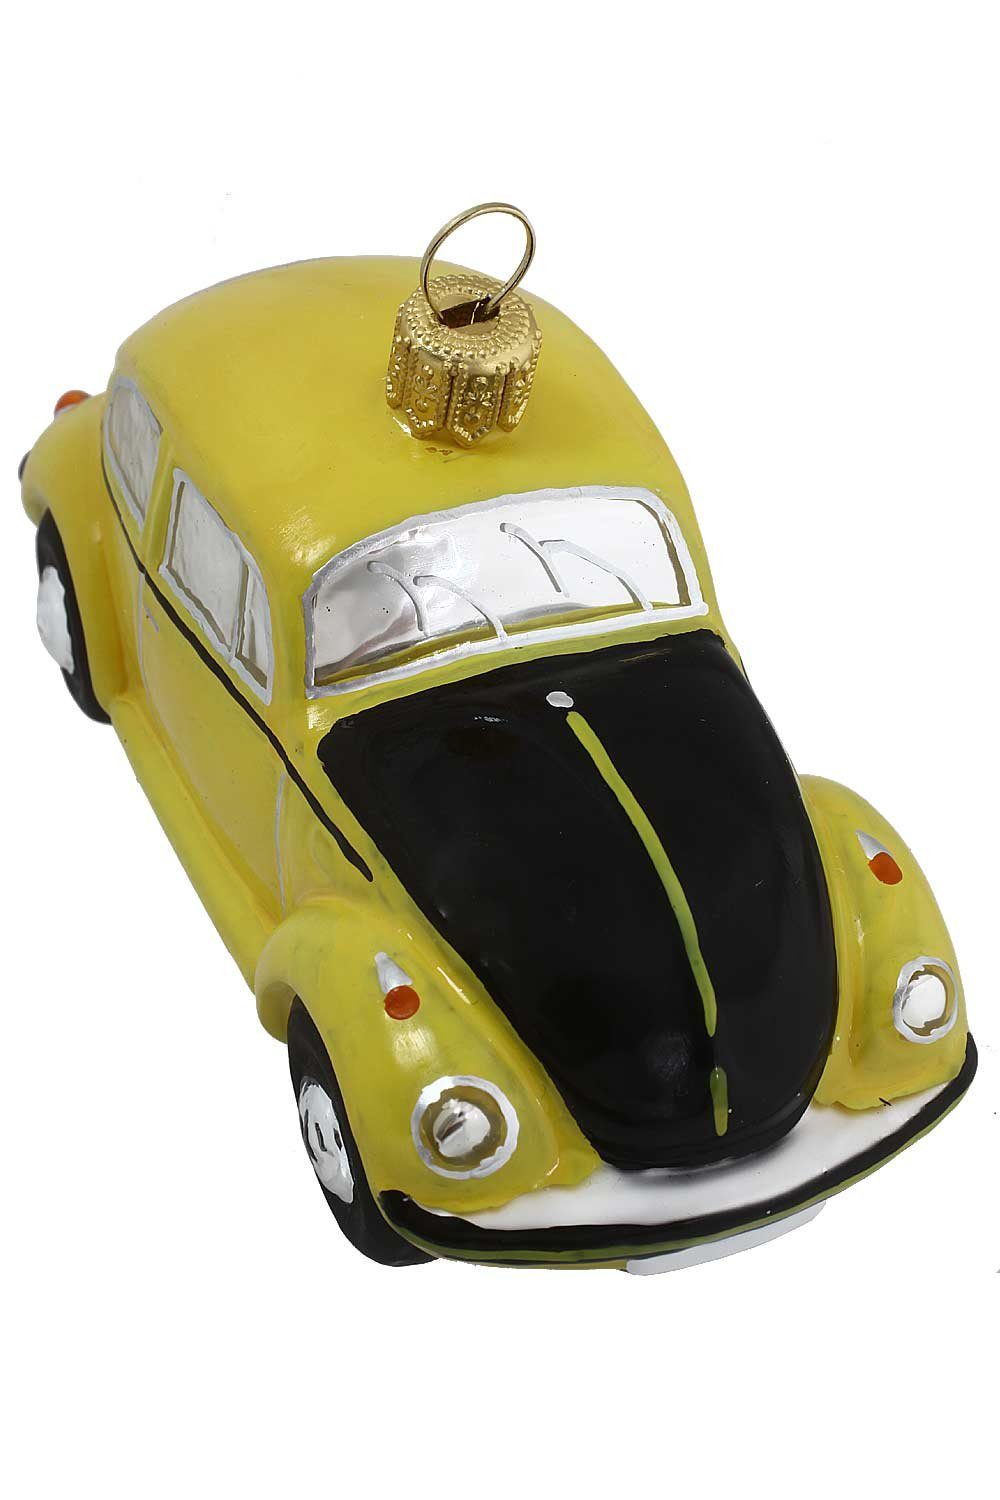 Christbaumschmuck - Licensed gelb-schwarz Official Produkt, mundgeblasen Weihnachtskontor Hamburger - Käfer Dekohänger handdekoriert VW